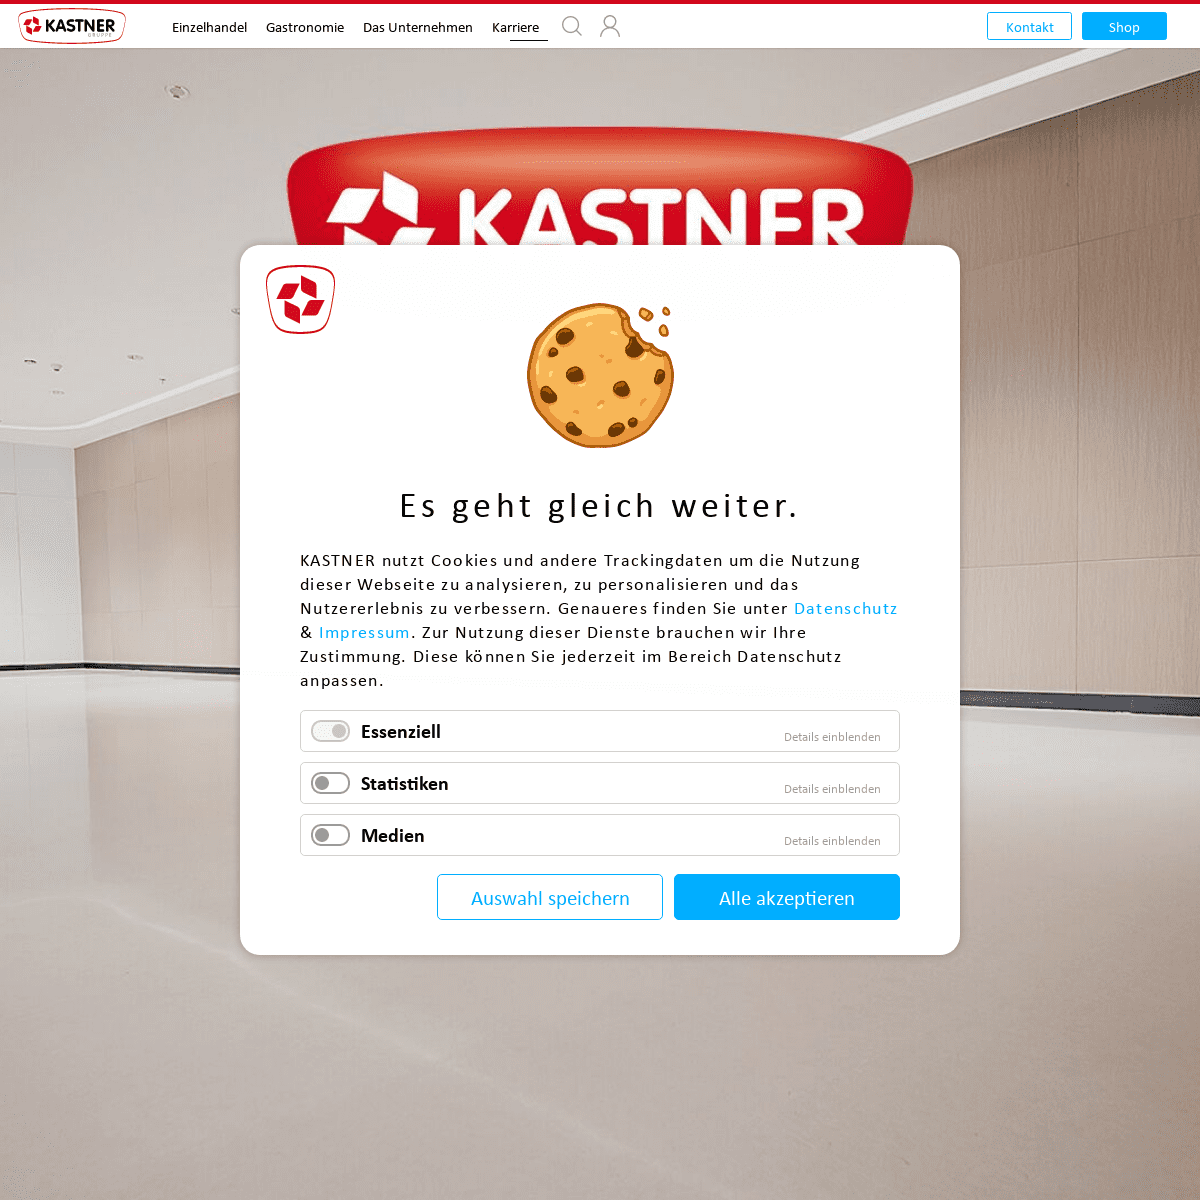 A complete backup of https://kastner.at